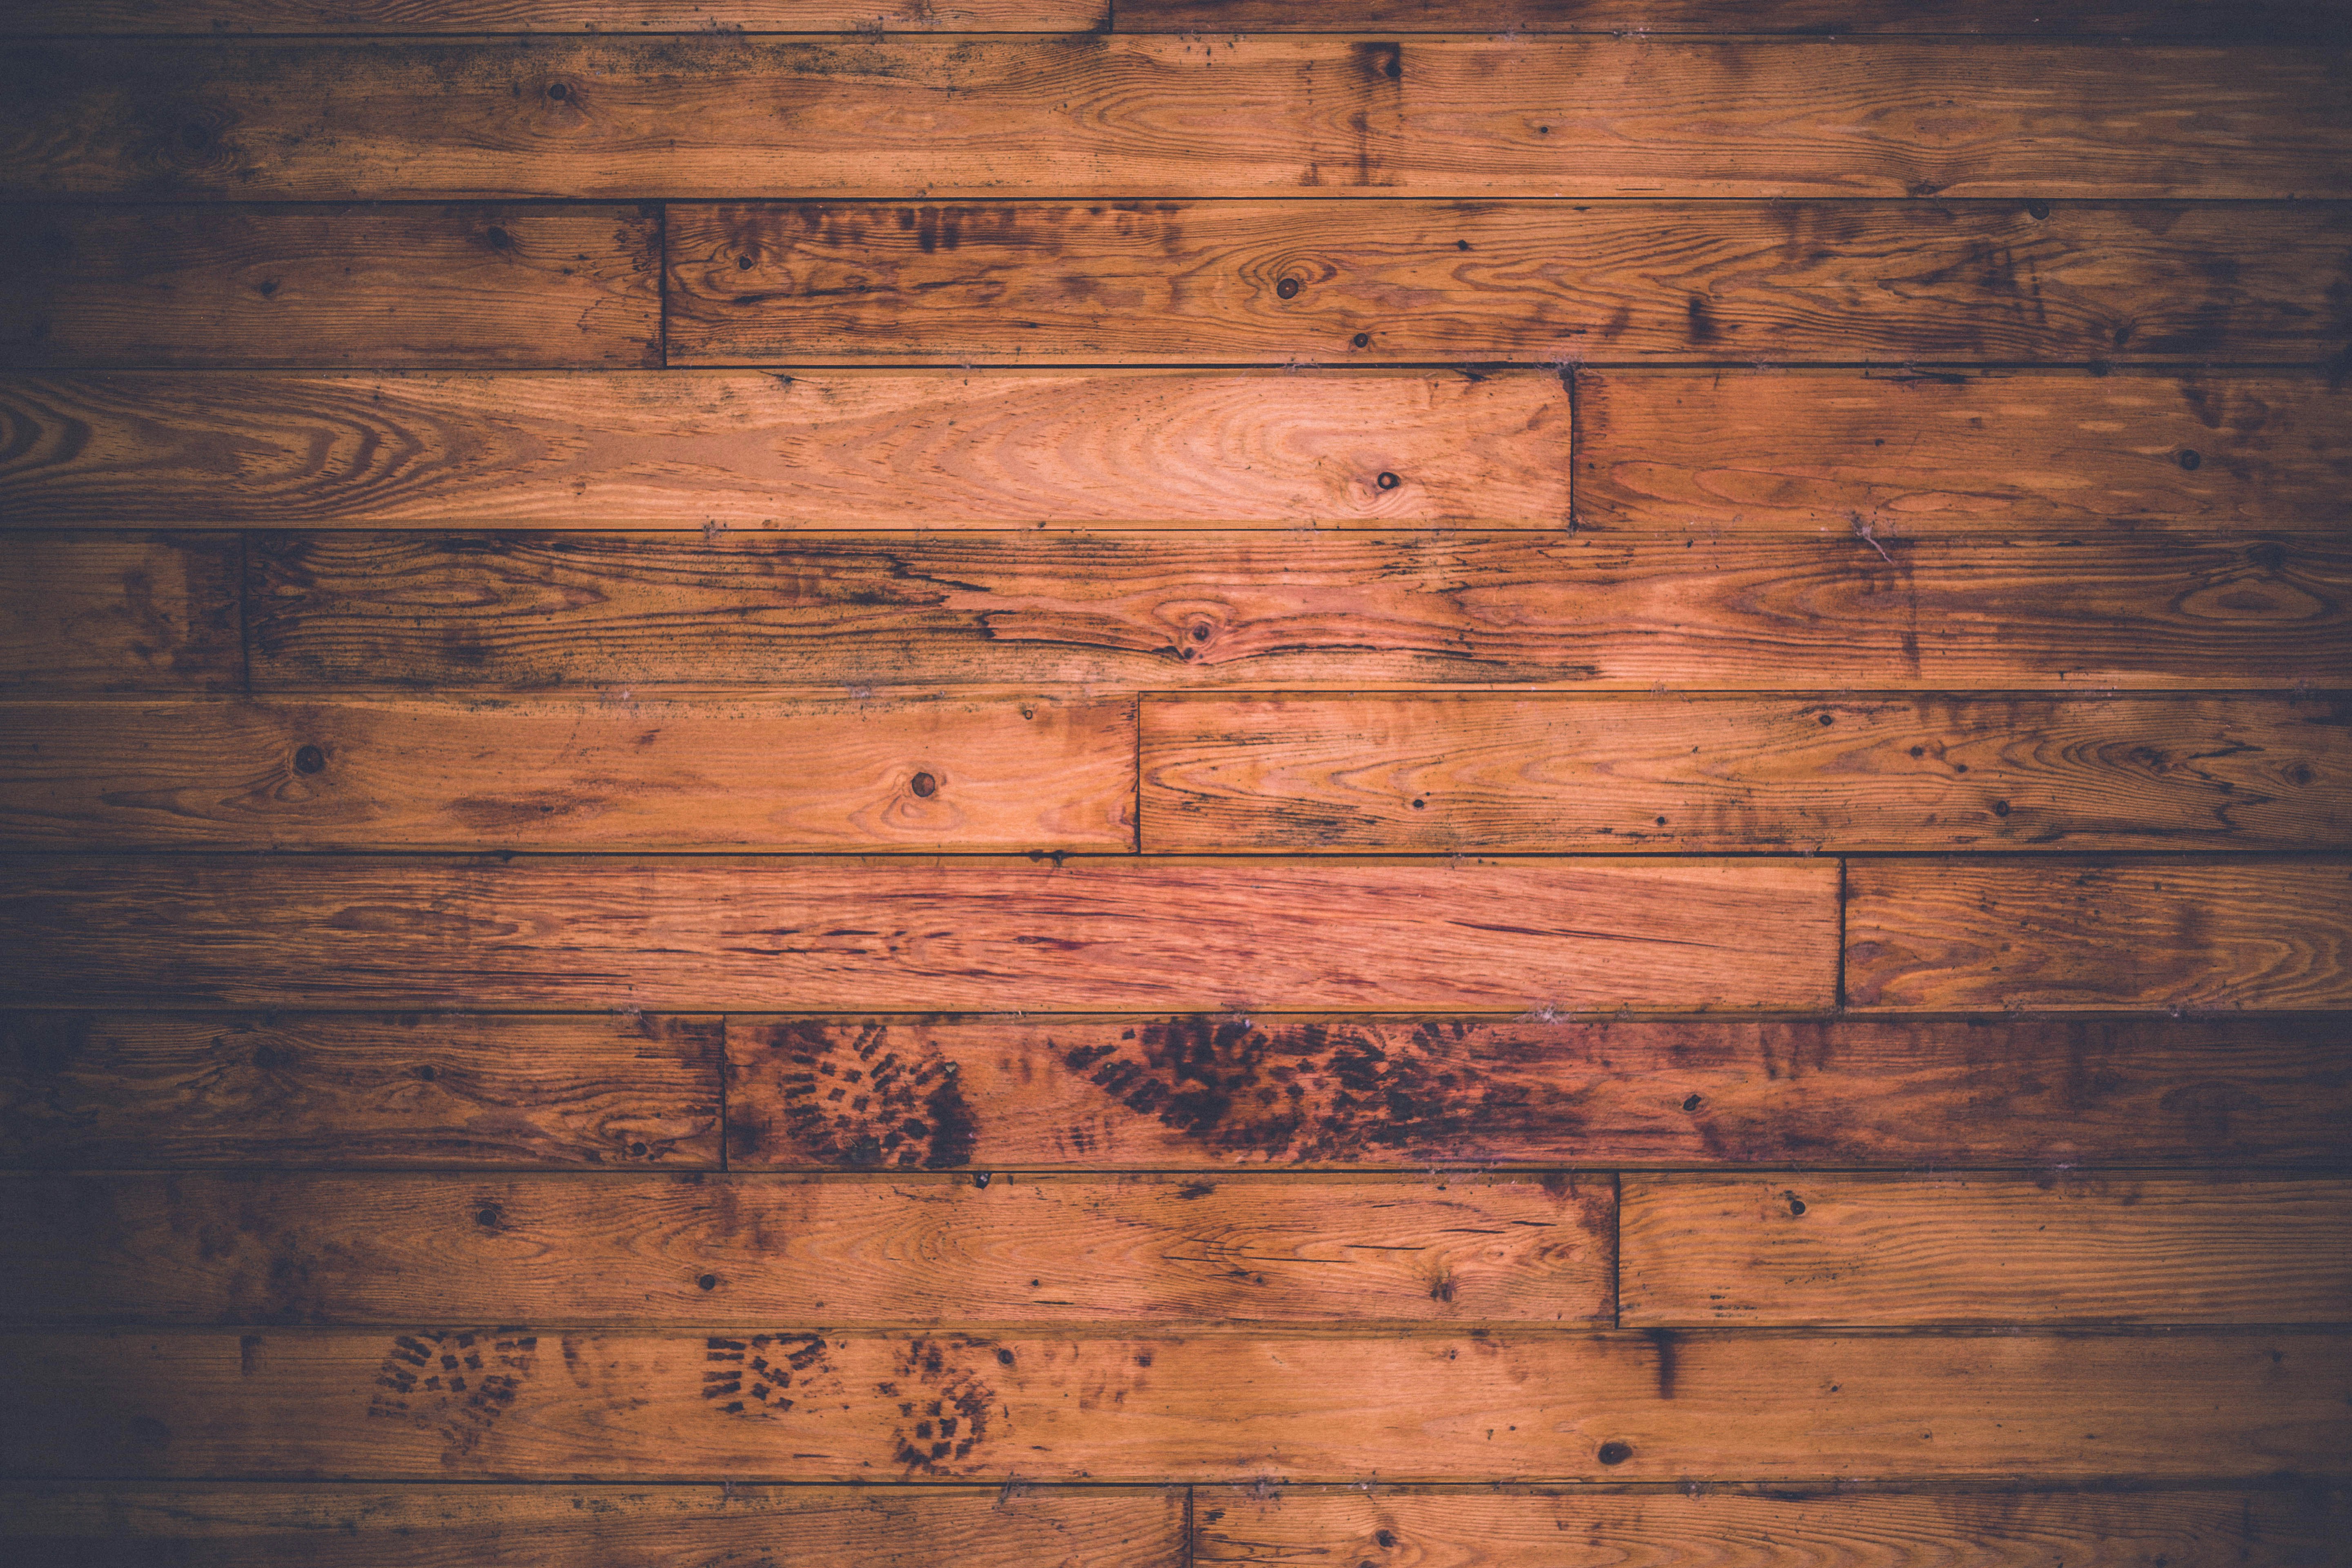 Với những tấm hình ảnh gỗ phẳng được thiết kế với đường nét chính xác và tinh tế, chúng tôi tin rằng bạn sẽ không thể rời đi trước khi xem hết bộ sưu tập này. Với sự kết hợp giữa trải nghiệm tuyệt vời và sự nghệ thuật đầy tinh tế, hình ảnh gỗ phẳng của chúng tôi sẽ khiến không gian của bạn trở nên đẹp hơn và sang trọng hơn.